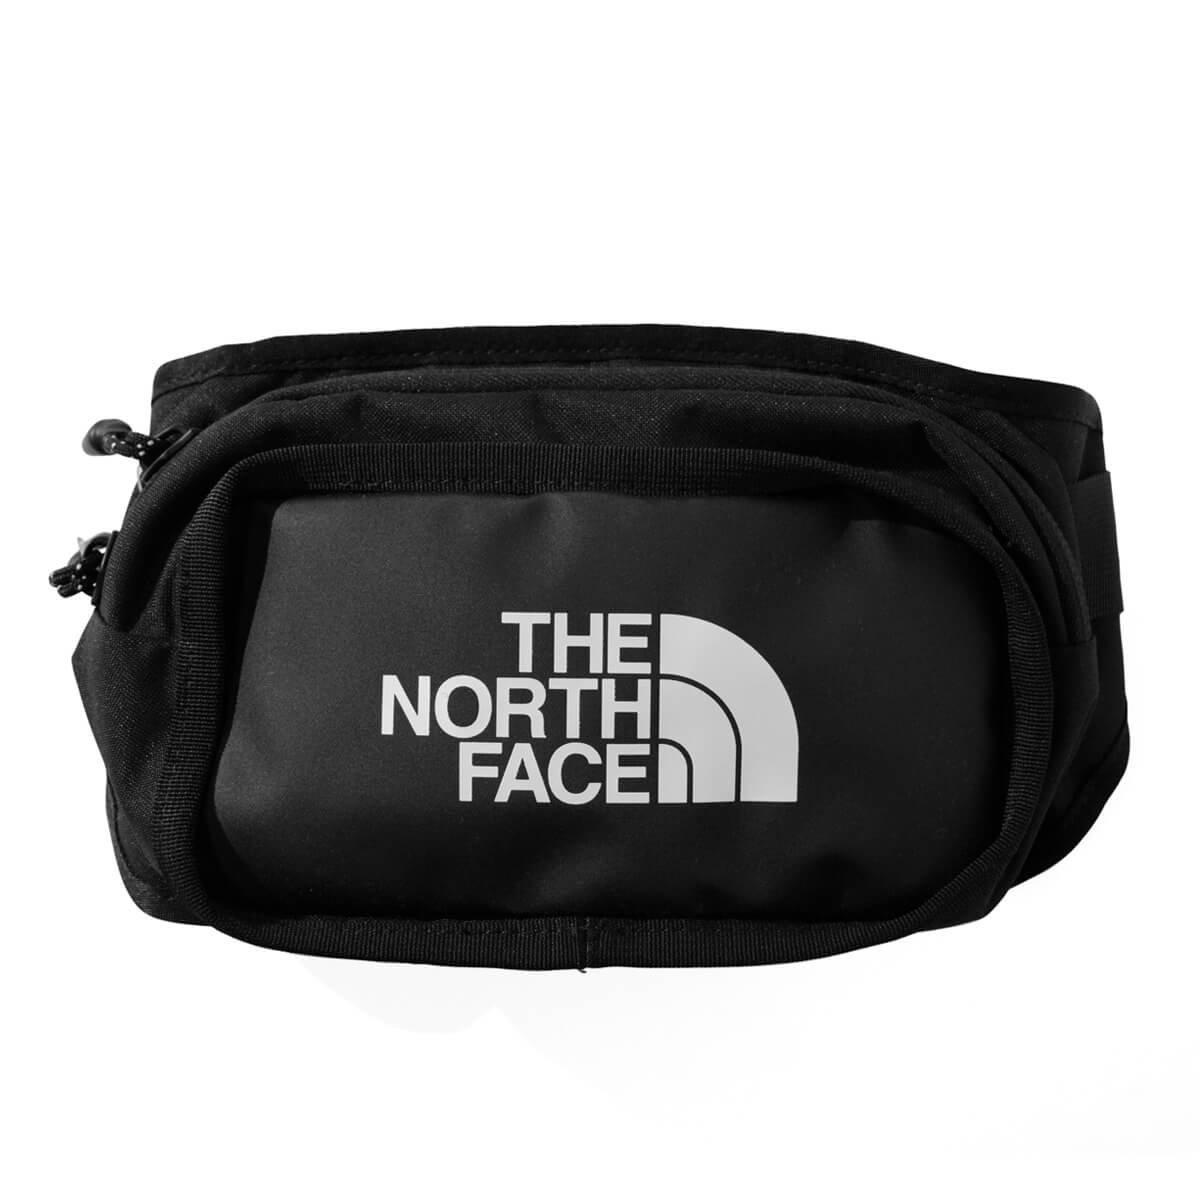 ノースフェイス スポーツ バッグ The North Face ザ ノース フェイス ウエストバッグ メンズ ストリート スポーツ カジュアル ブランド EXPLORE HIP PACK BLACK ブラック 黒色 NF0A3KZX